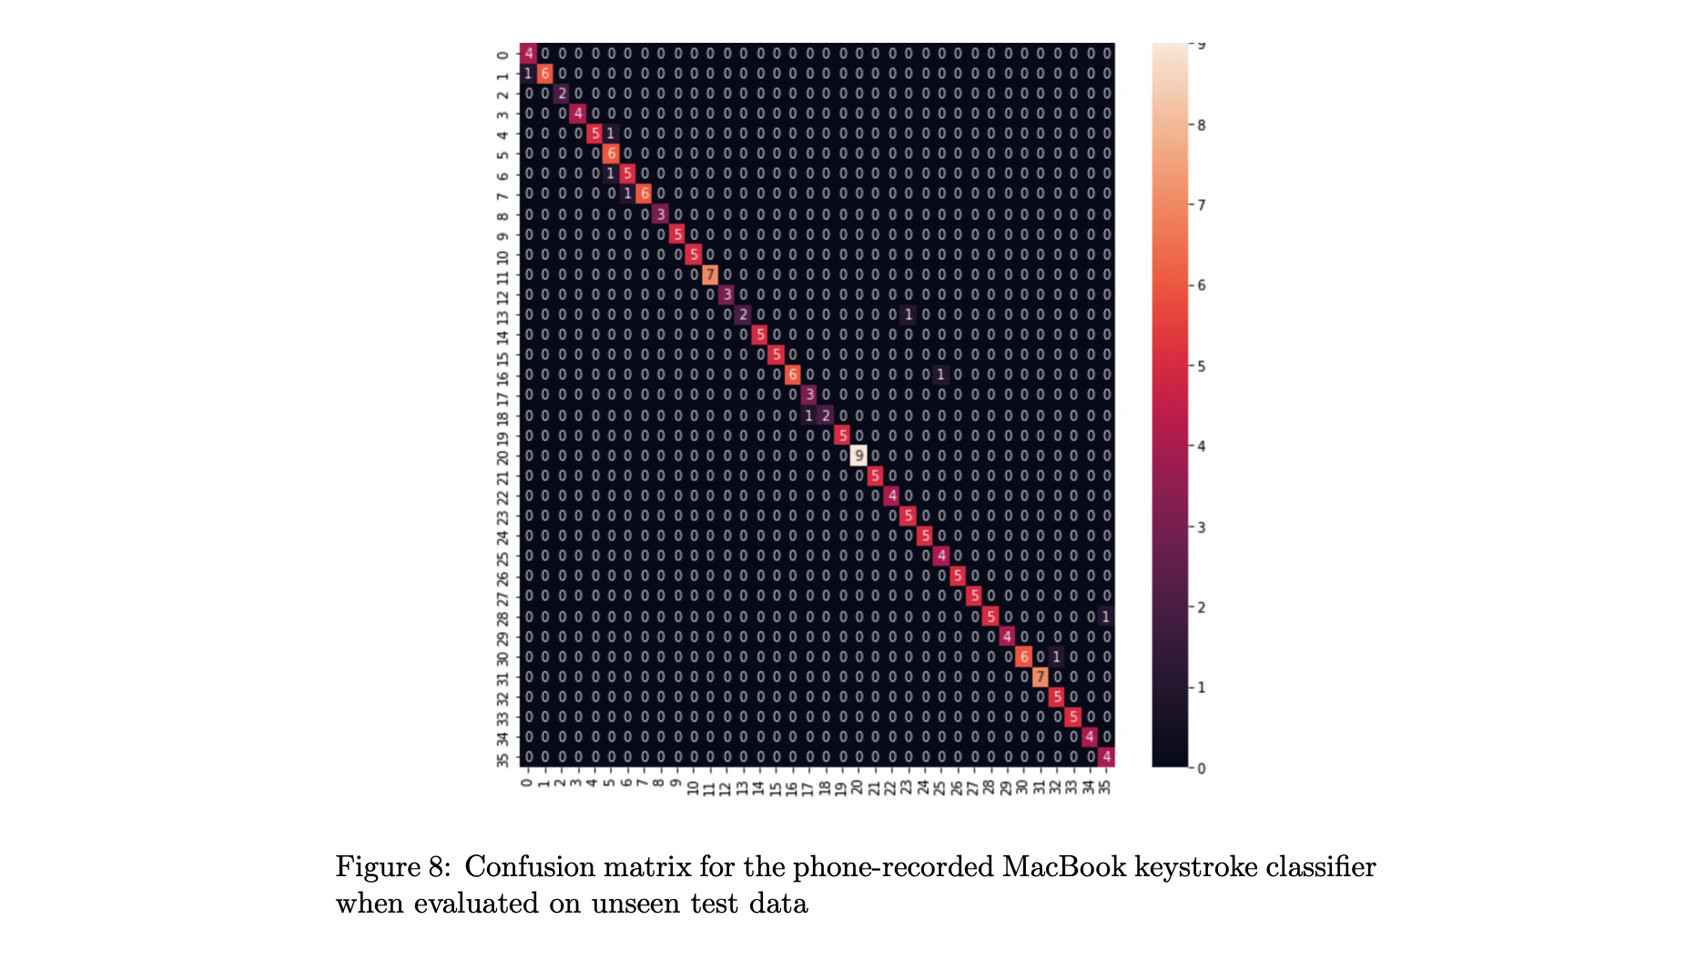 Matriz que revela el grado de confusión para el clasificador con grabaciones del iPhone 13